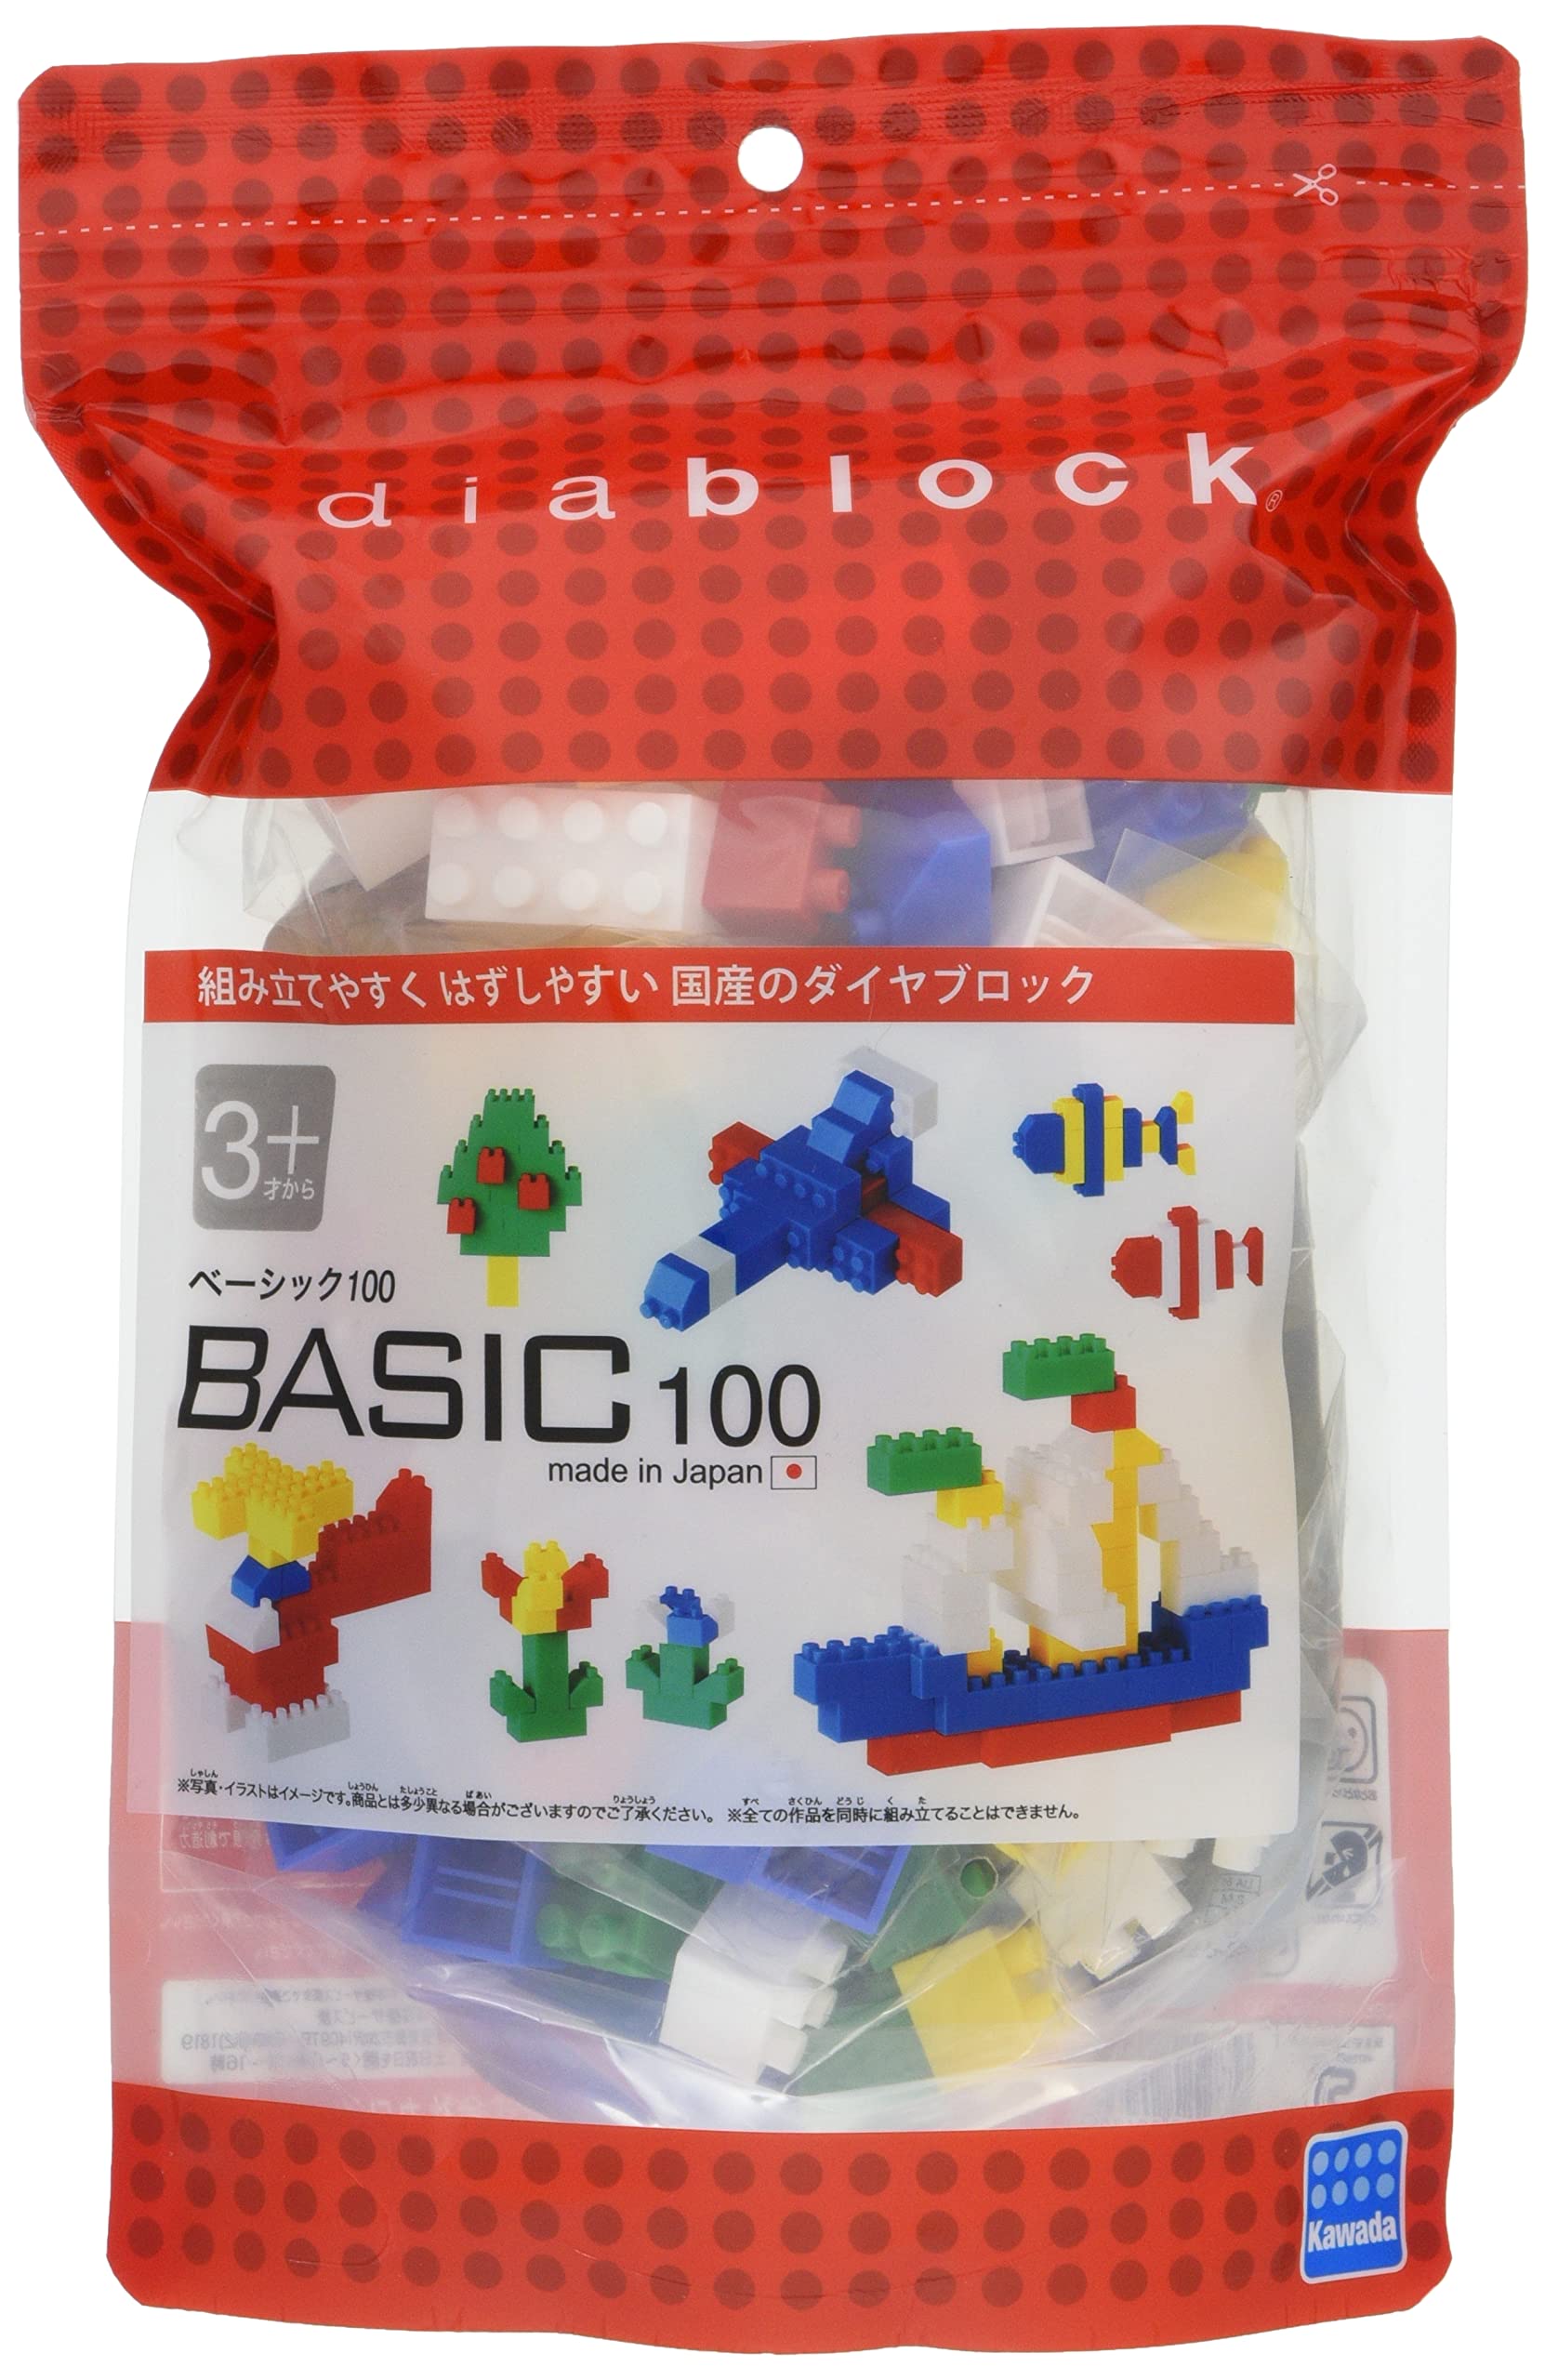 ダイヤブロック BASIC 100 DBB-06